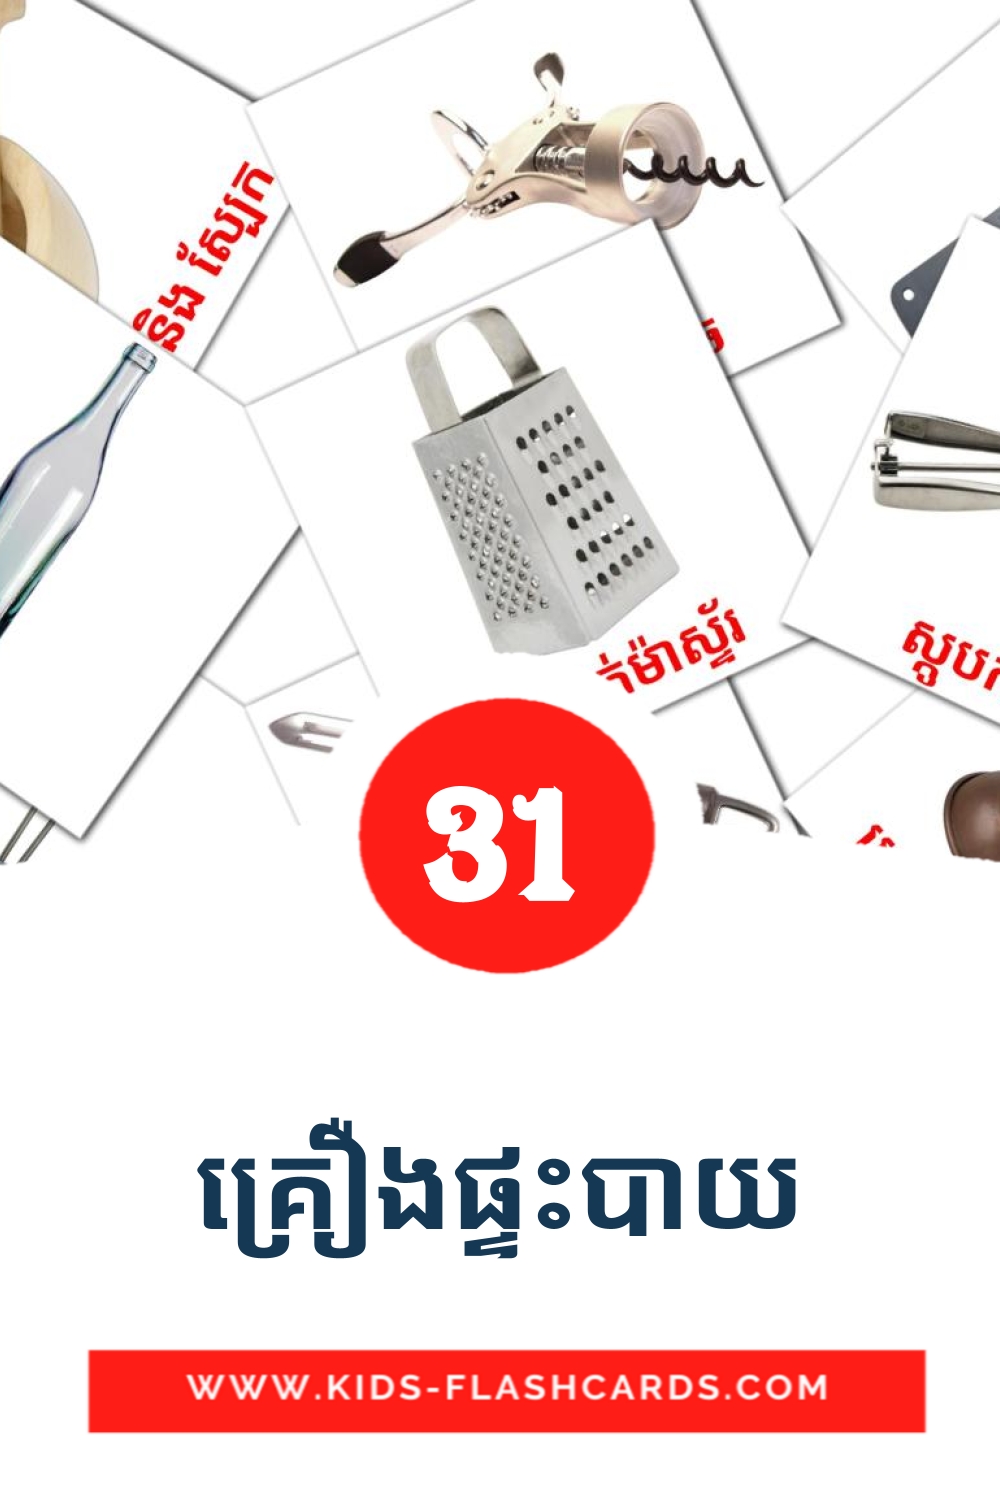 31 cartes illustrées de គ្រឿងផ្ទះបាយ pour la maternelle en khmer